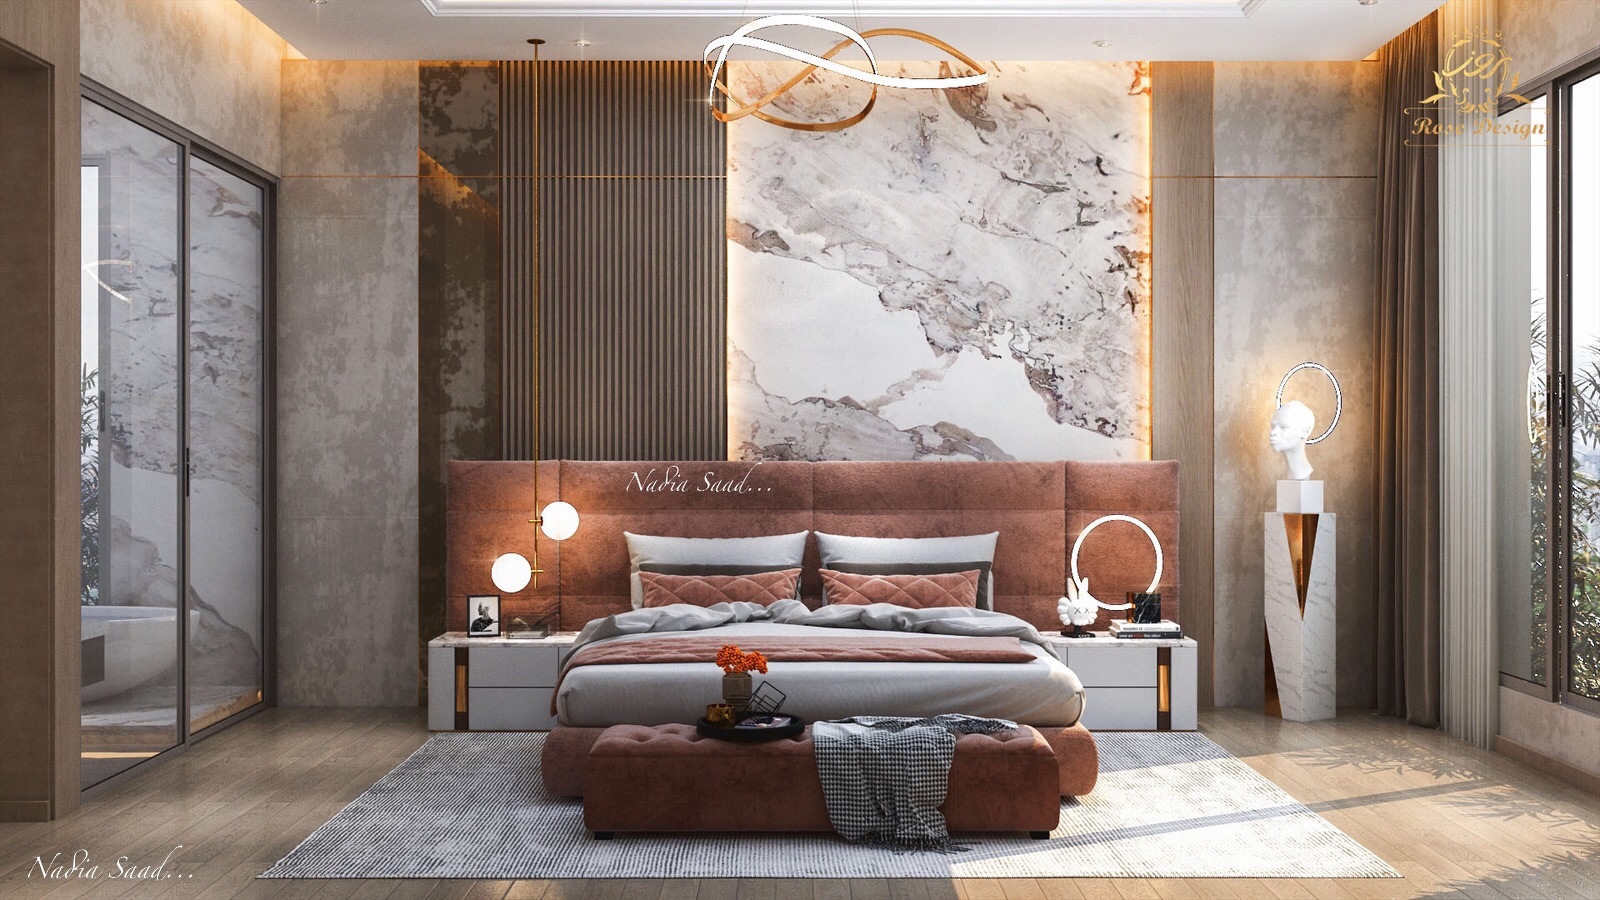 Modern Master bedroom design in kSA   Behance